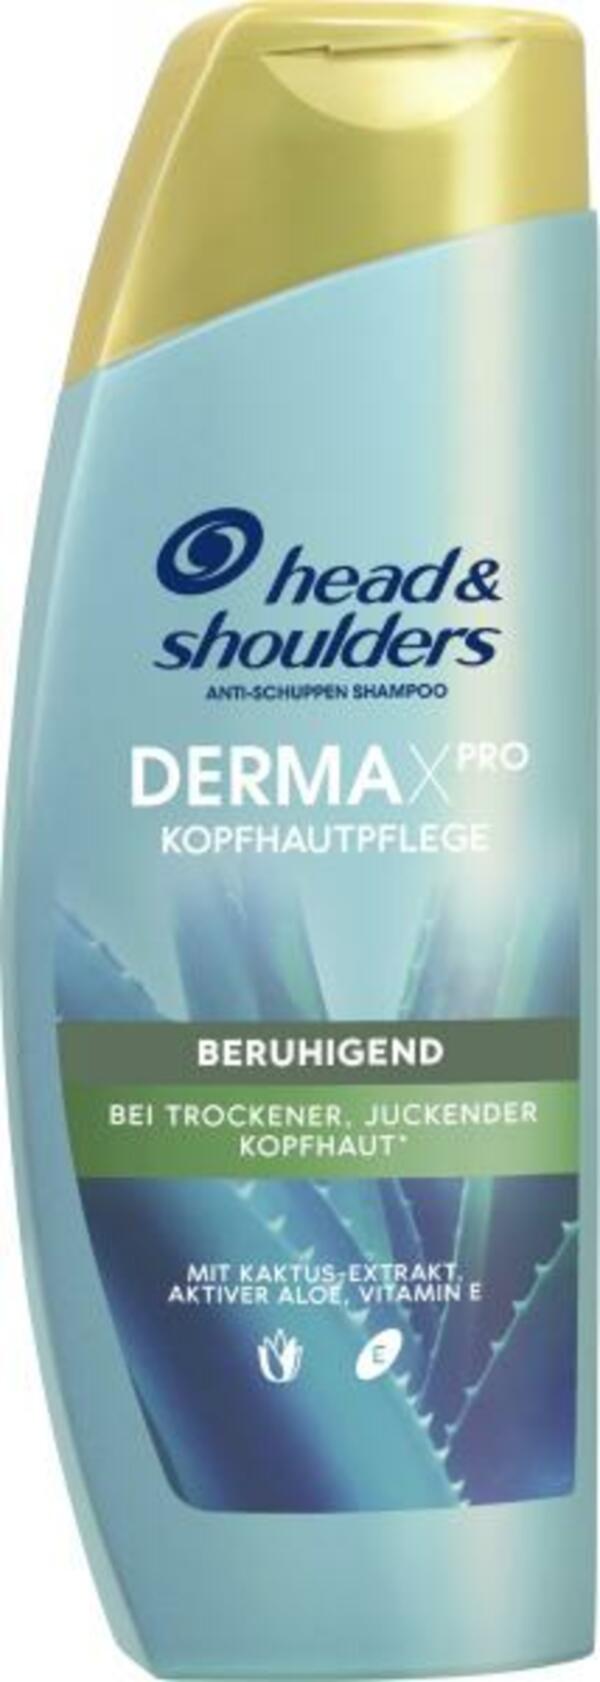 Bild 1 von Head & Shoulders Anti-Schuppen Shampoo Derma X Pro Beruhigend